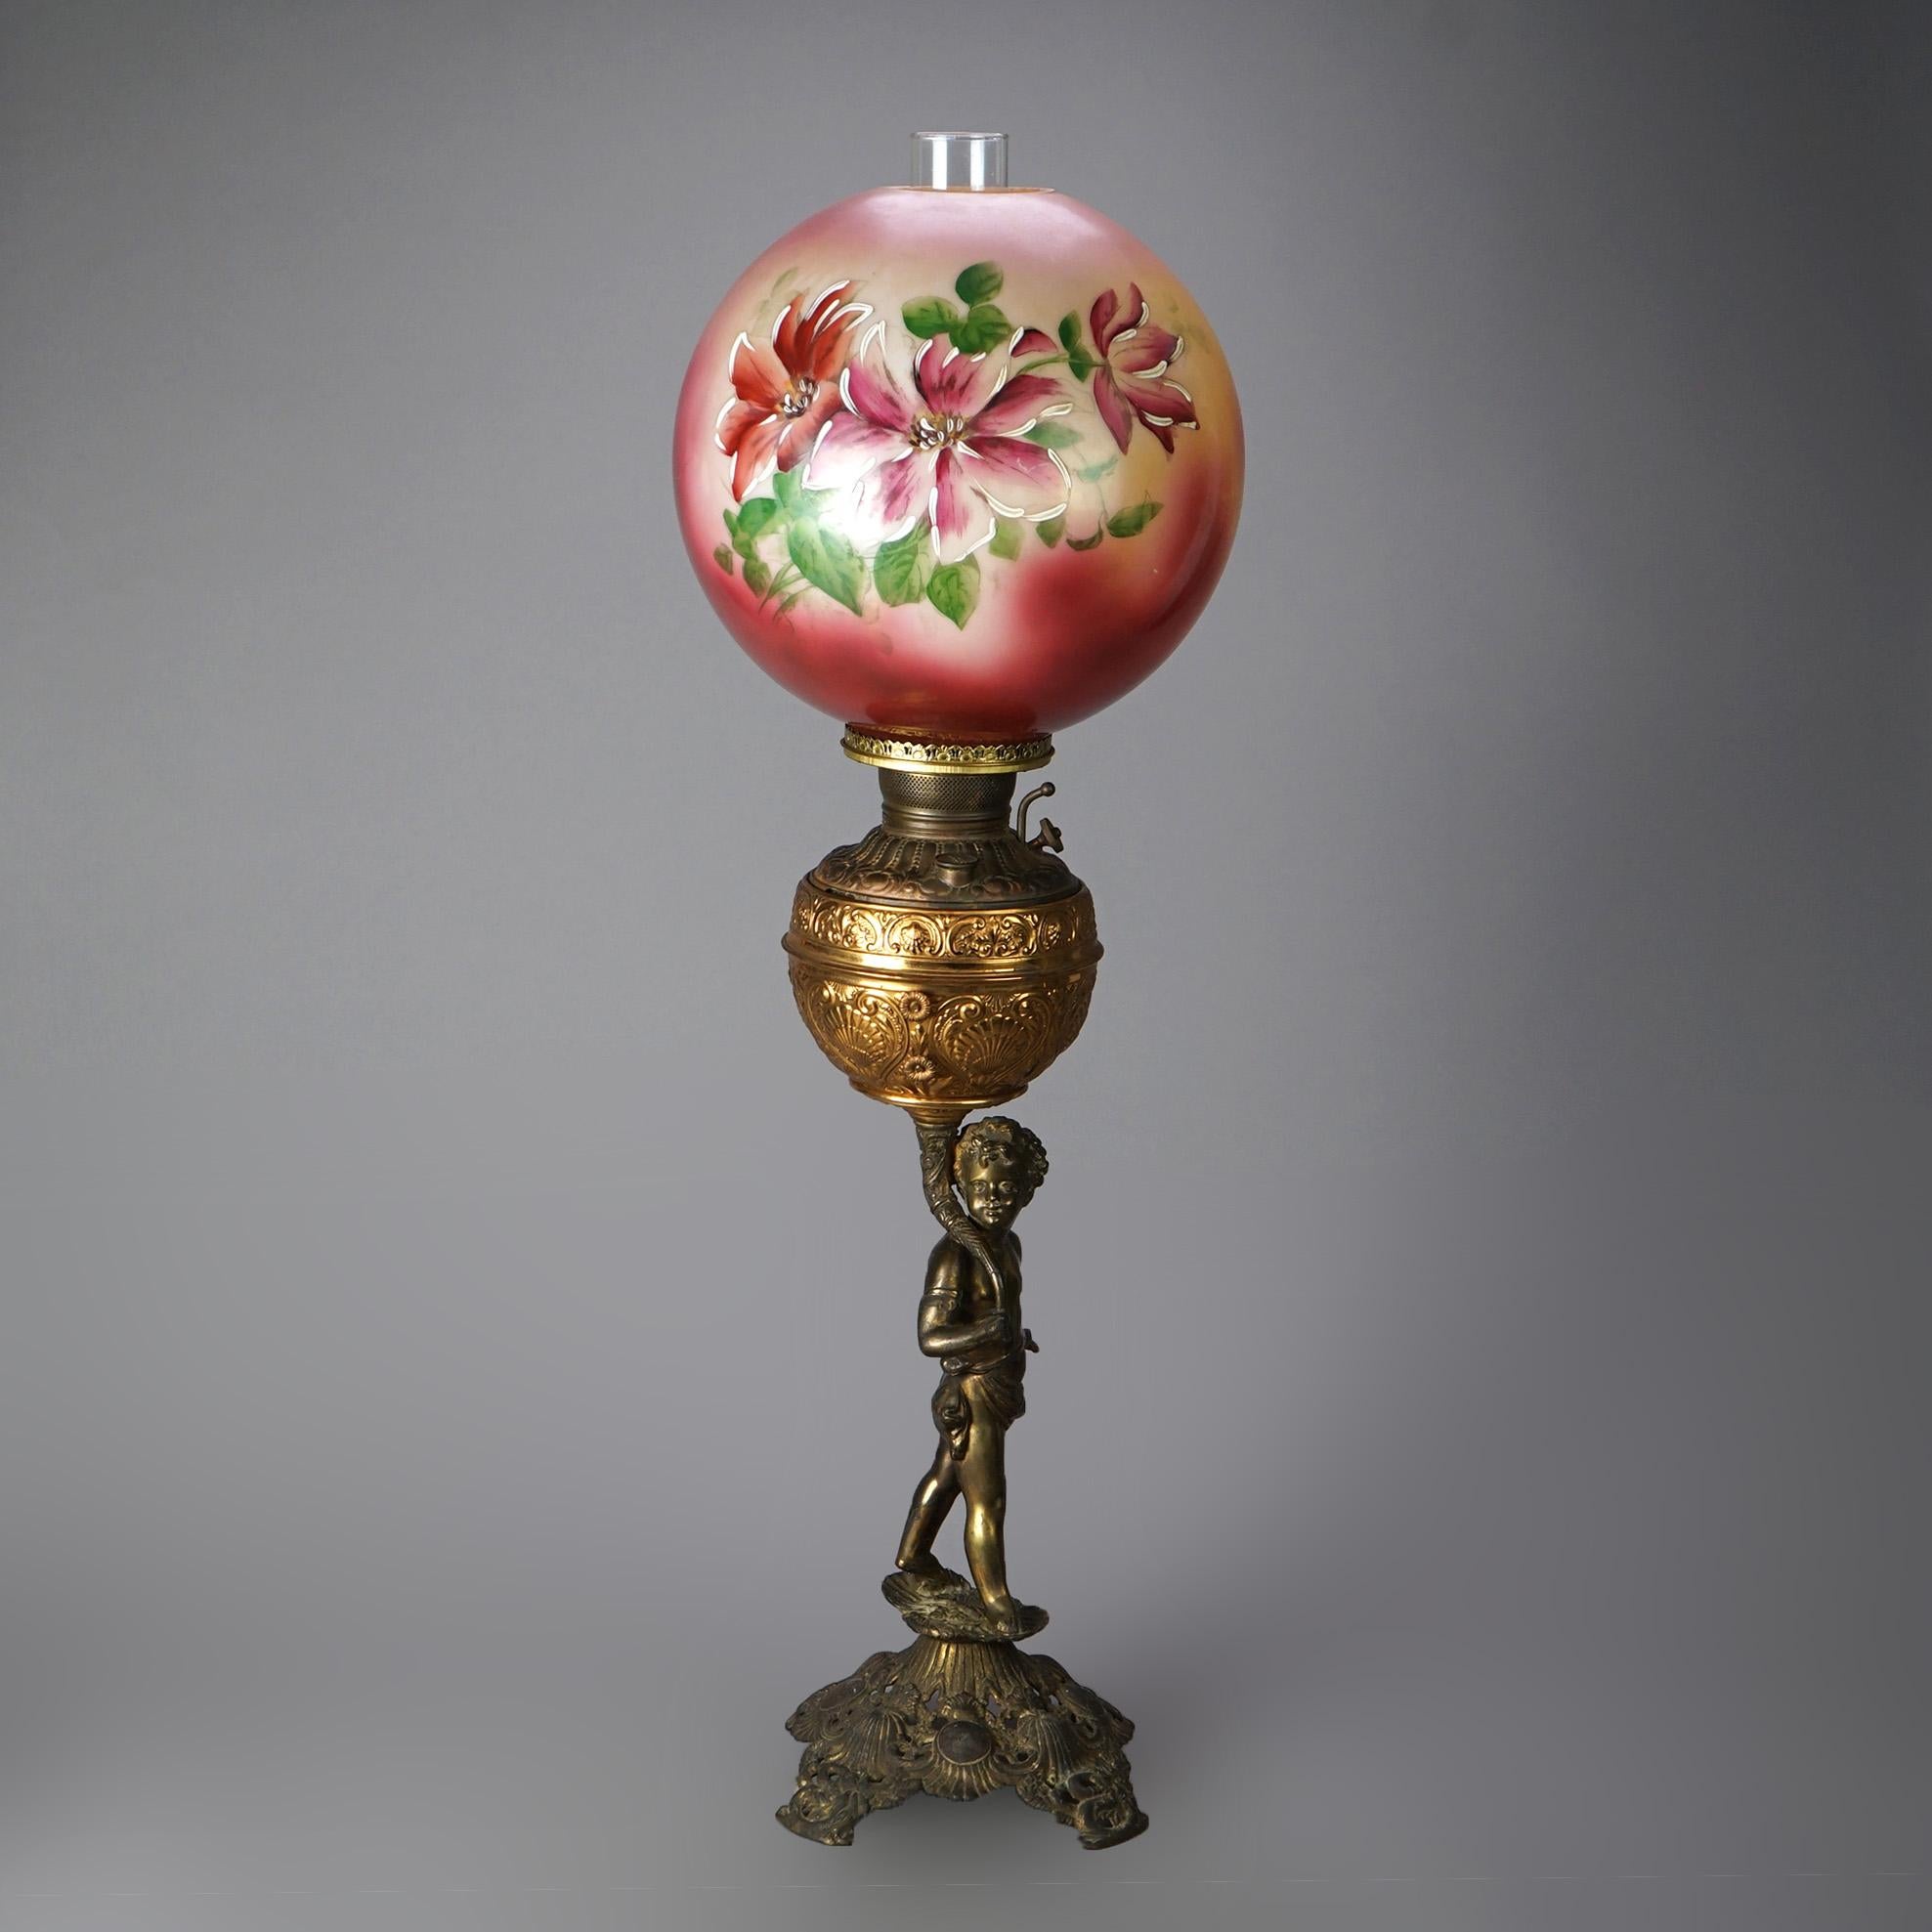 Ancienne lampe à huile figurative offrant une lampe florale peinte à la main sur une base en laiton moulé et en métal doré représentant un jeune garçon dans un cadre champêtre, vers 1890

Mesures - 34,25 